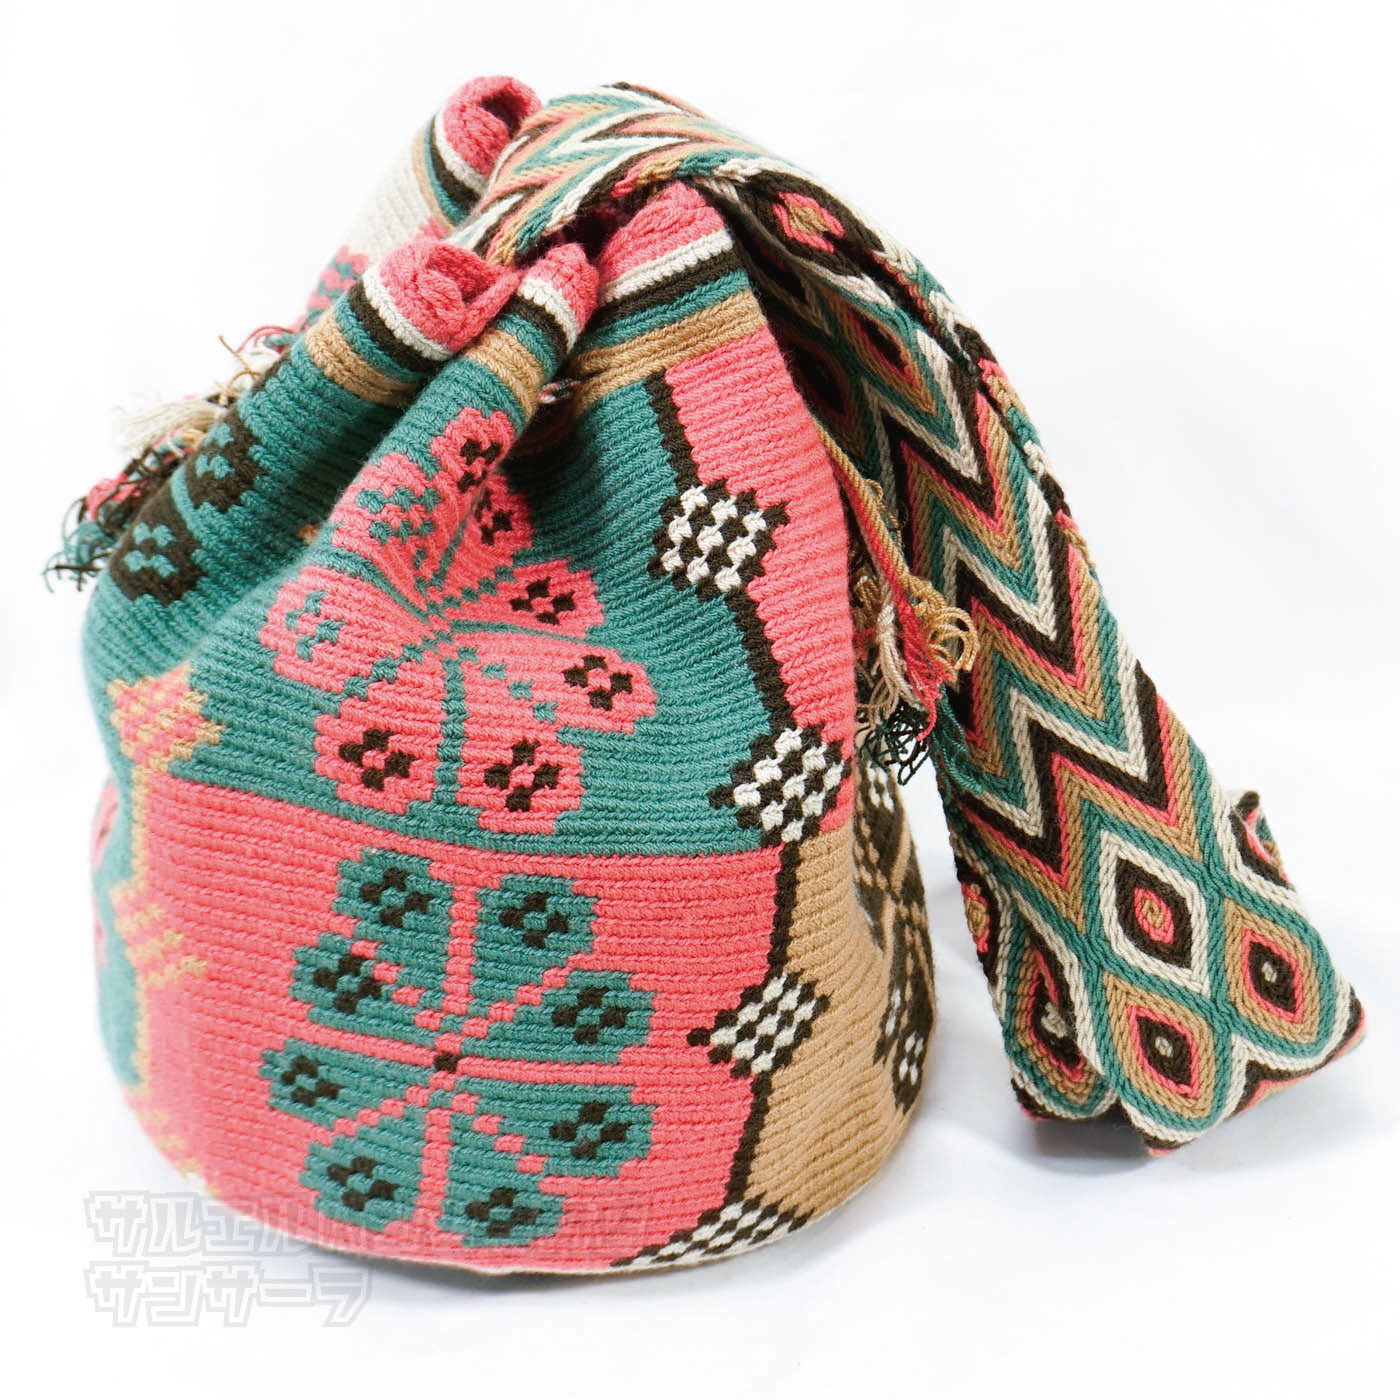 ワユーバッグ wayuu bag マザーズバッグ ショルダーバッグ レディース かごバッグ きれいめ ハンドメイド 手織り 南米 コロンビア 伝統 総柄 民族柄 エスニック ファッション プレゼントパターン1